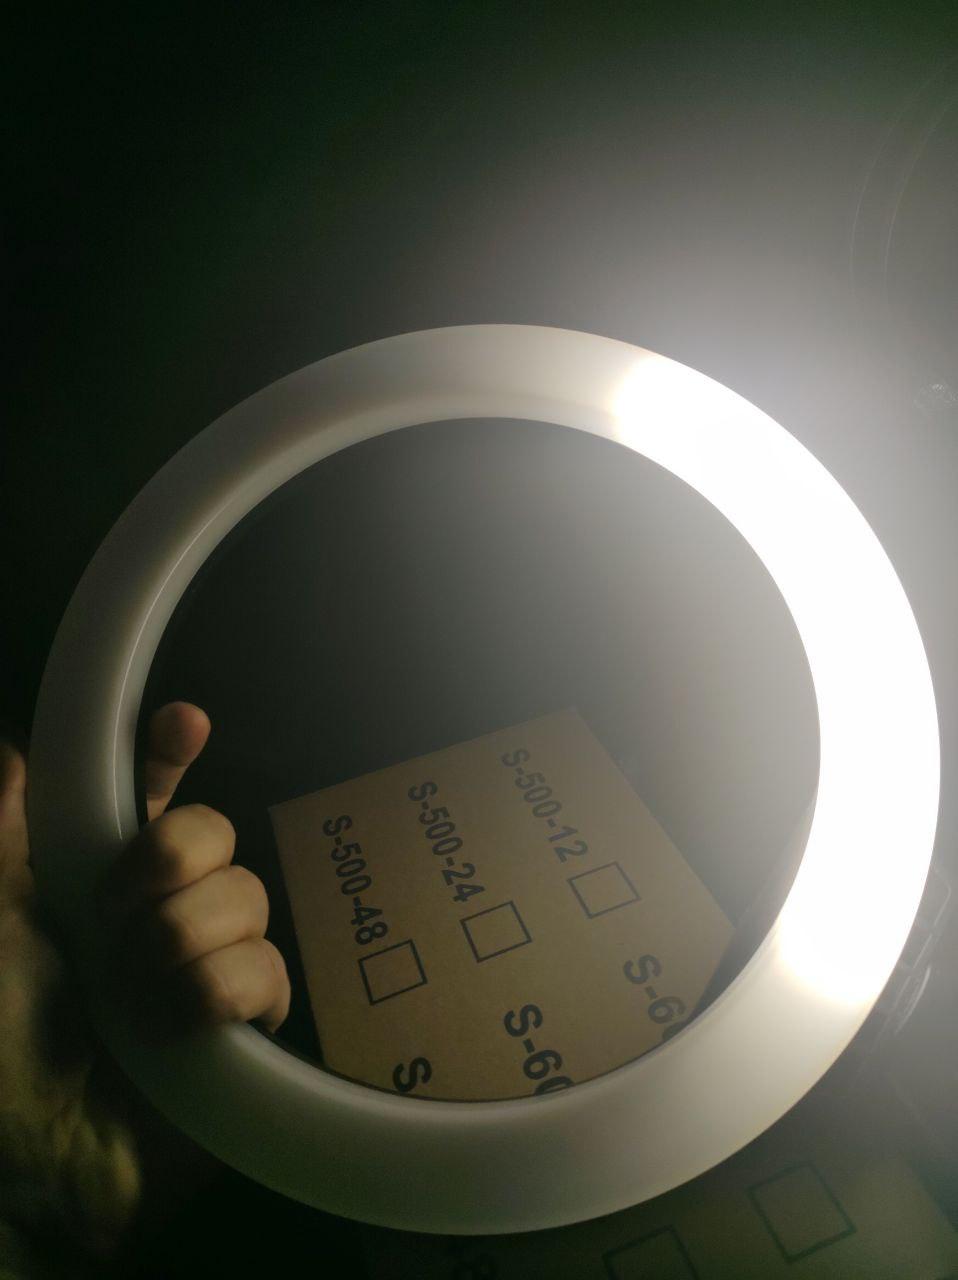 УЦЕНКА (РАБОРОТАЄ ТІЛЬКО 1/4 СВЕТА) Пальцева LED лампа діаметром 26 см з пультом